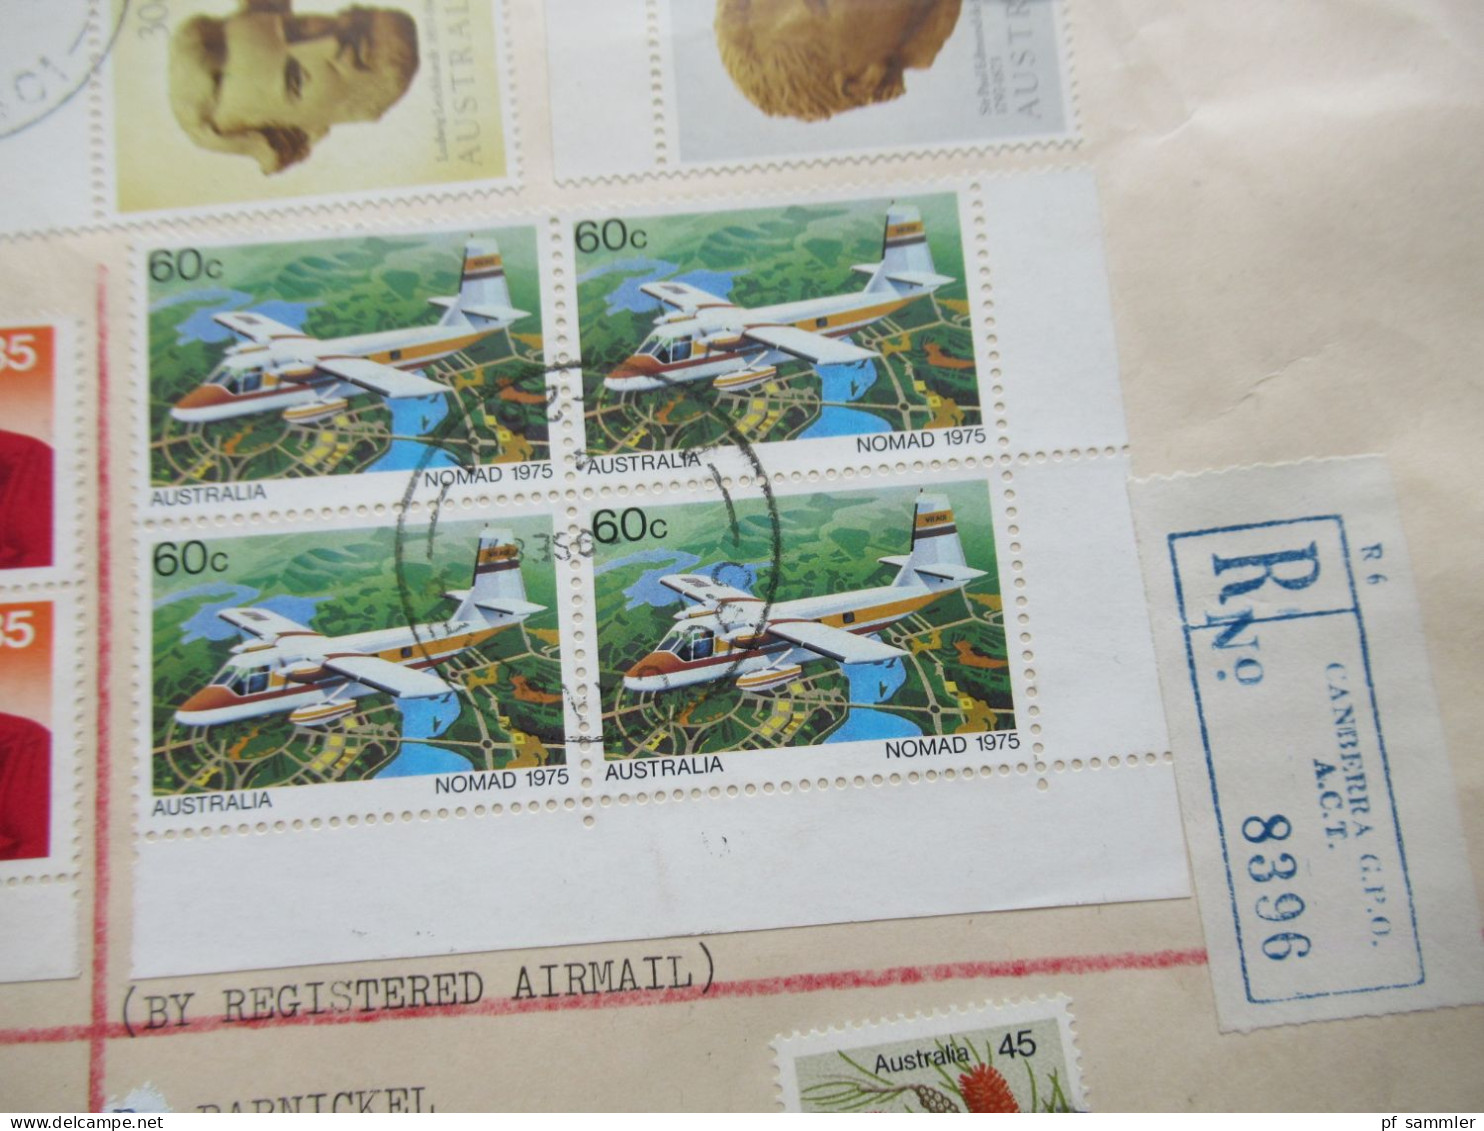 Australien 1987 Reko Registered Letter Canberra GPO Nach 8626 Michelau Oberfranken Motivmarken / Eckrand - Briefe U. Dokumente